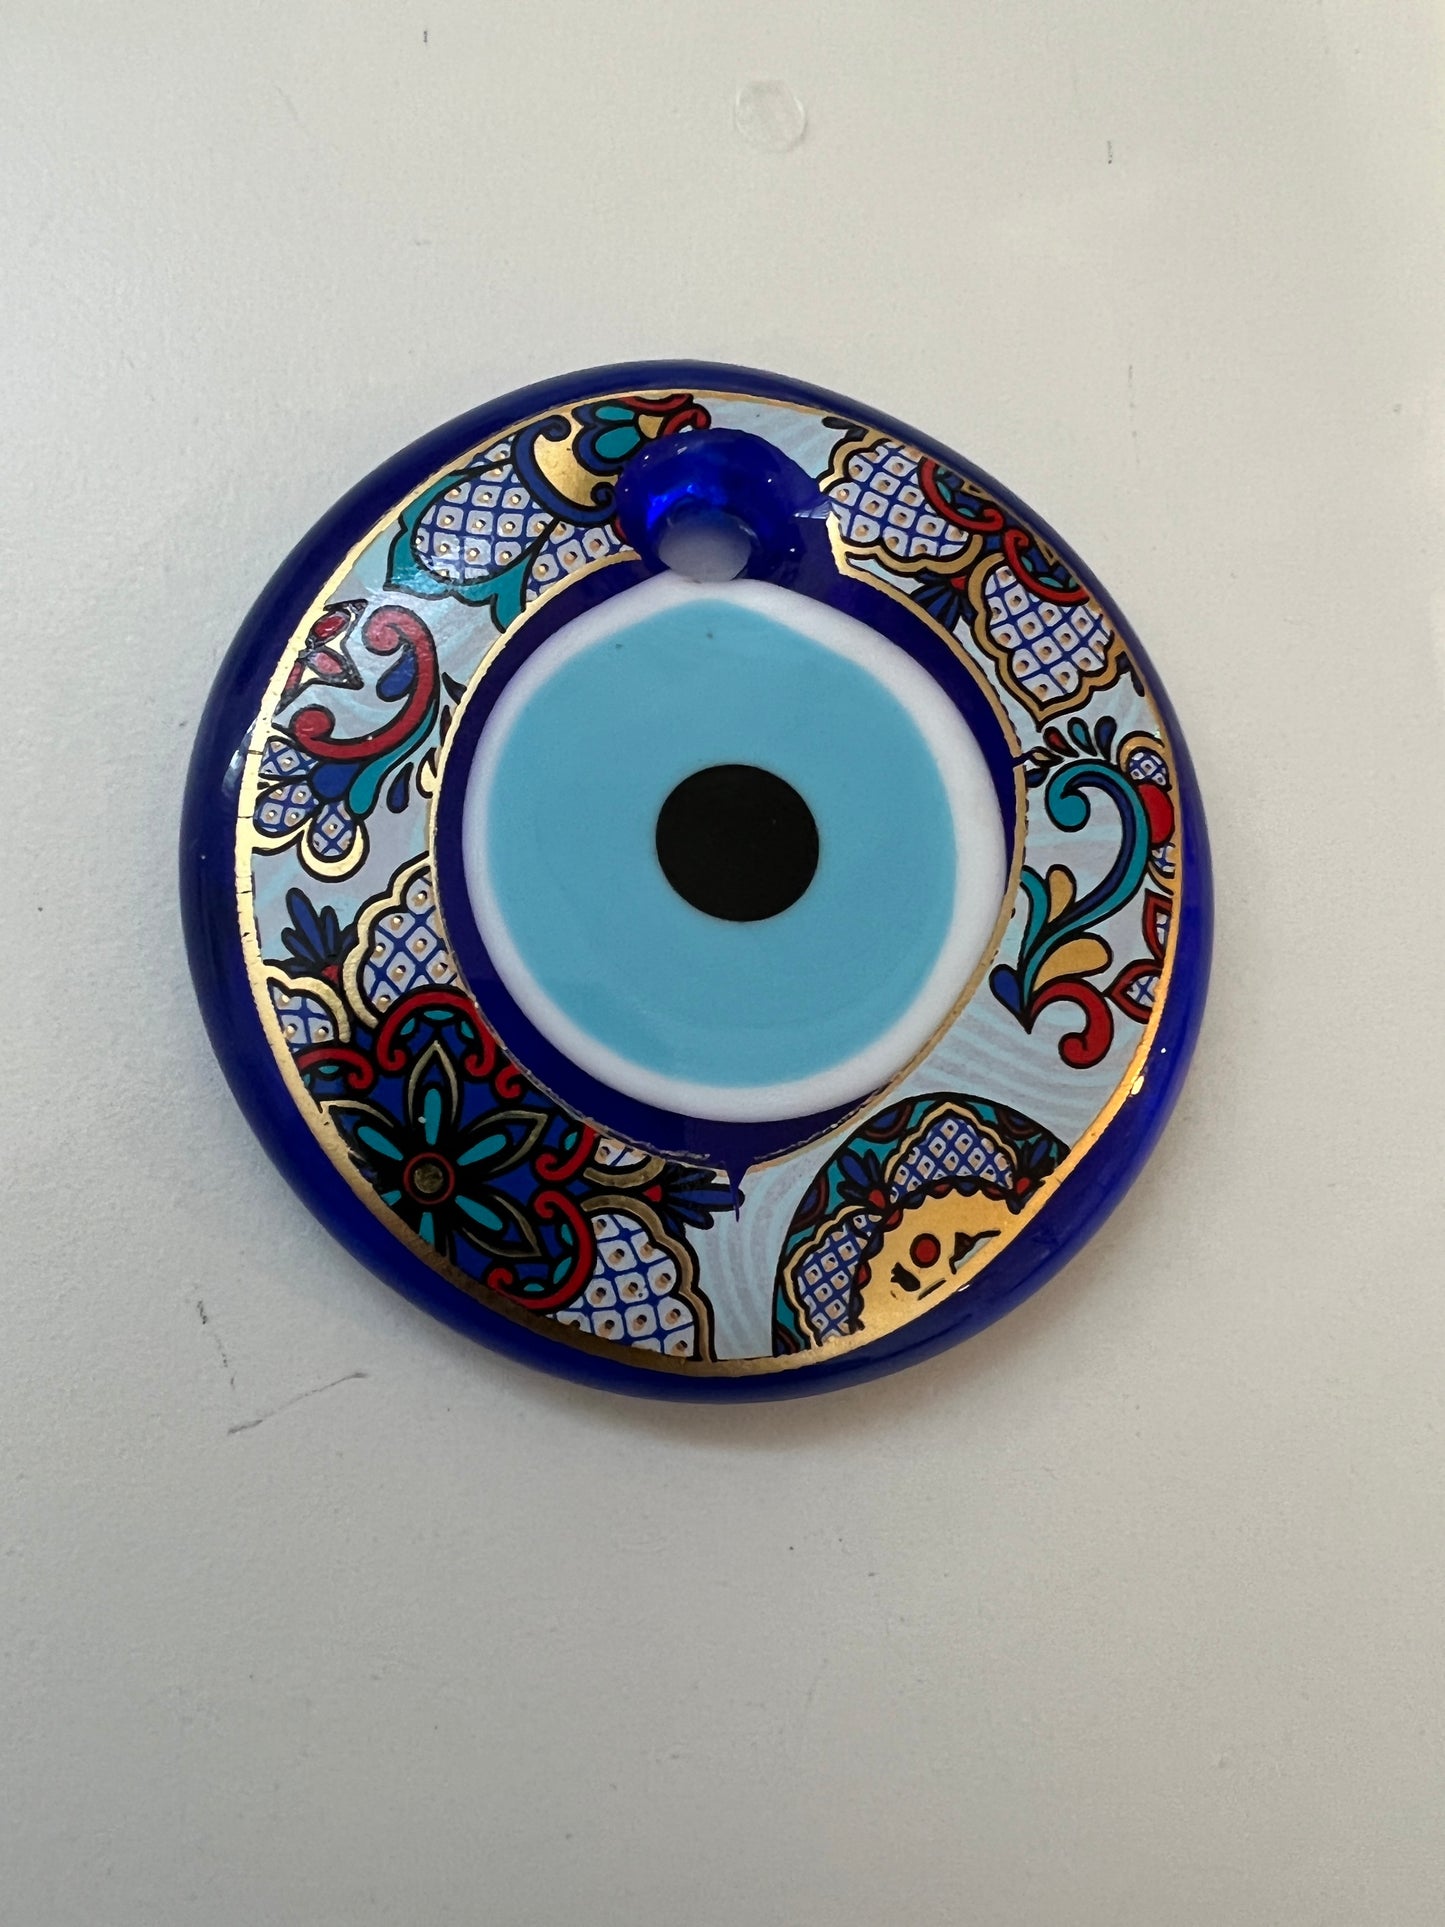 70mm Turkish eye pendant